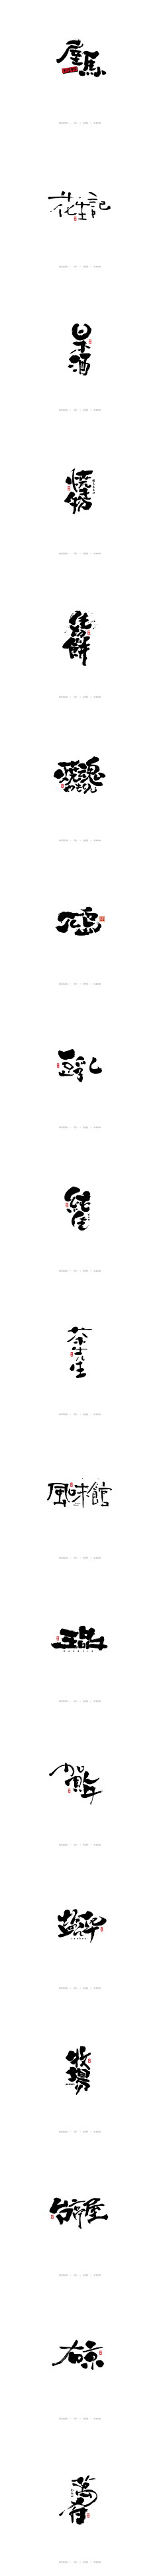 刘小舞采集到字体设计